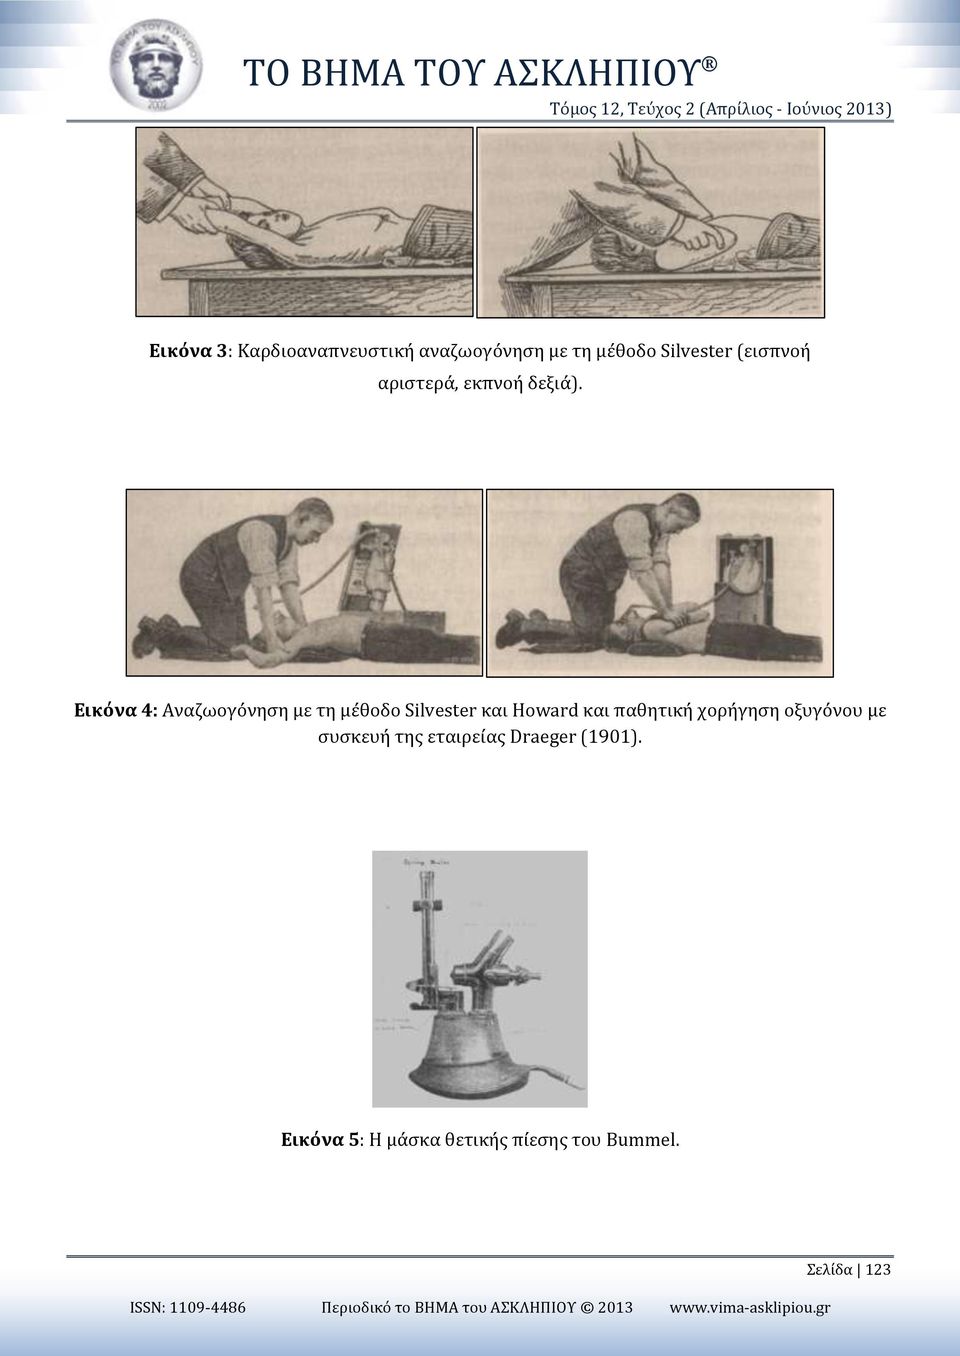 Εικόνα 4: Αναζωογόνηση με τη μέθοδο Silvester και Howard και παθητική χορήγηση οξυγόνου με συσκευή της